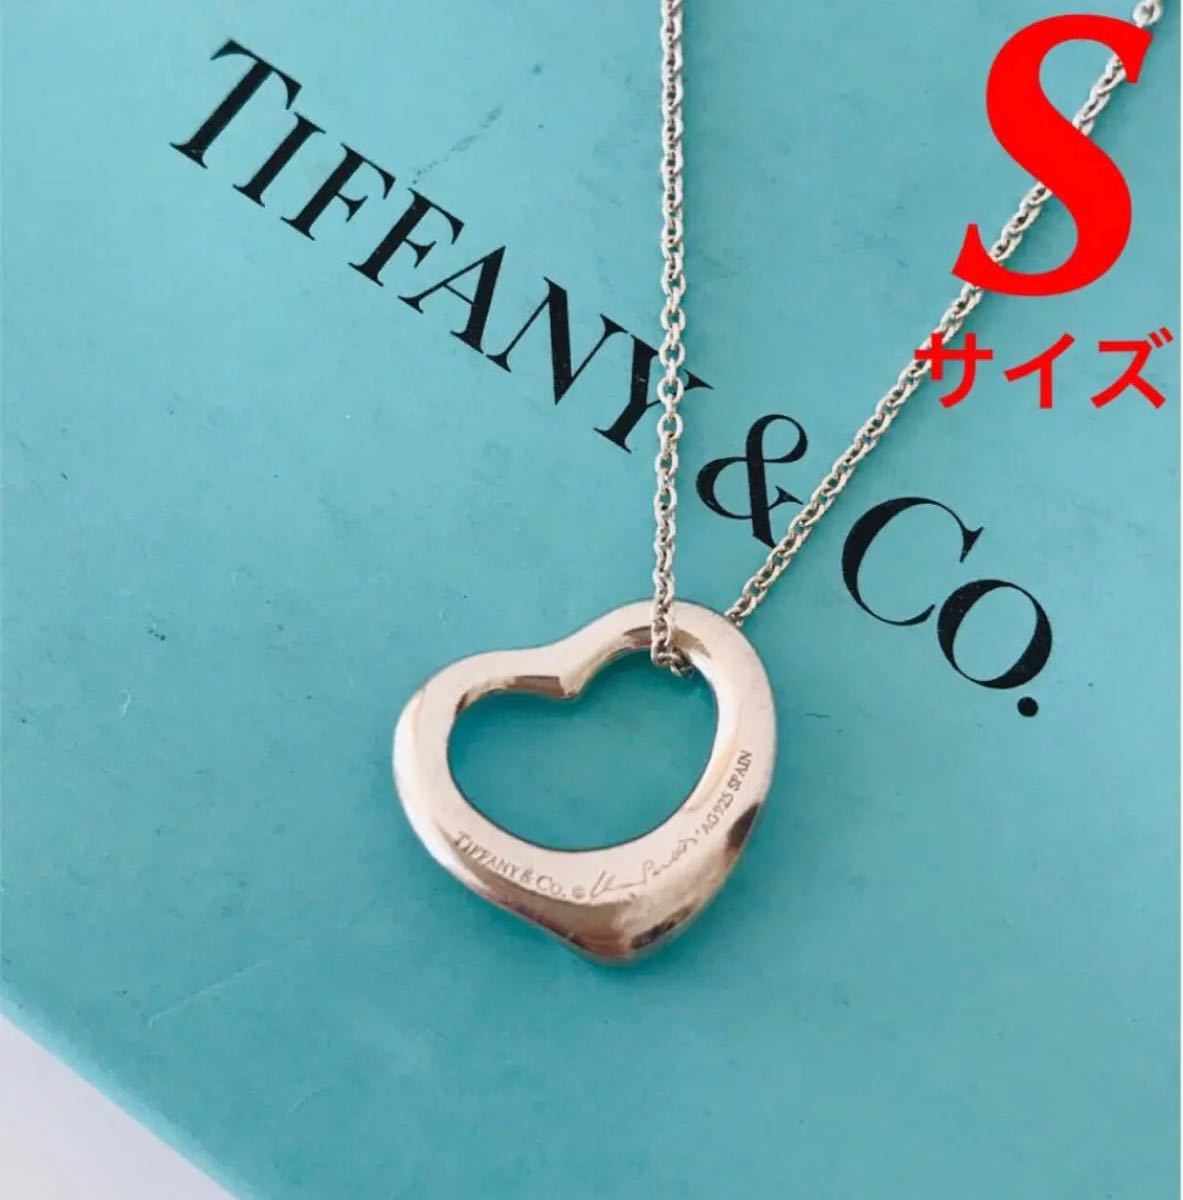 数量限定セール Tiffany ティファニー オープンハート ネックレス S